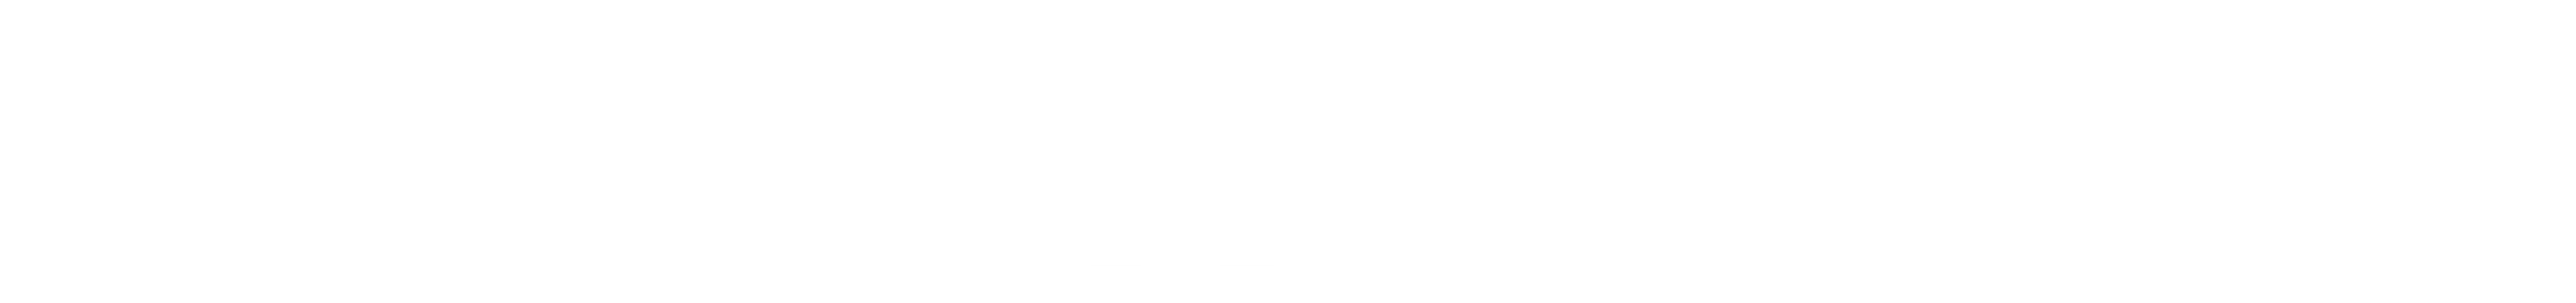 MazorDesign Logo Flach Weiß